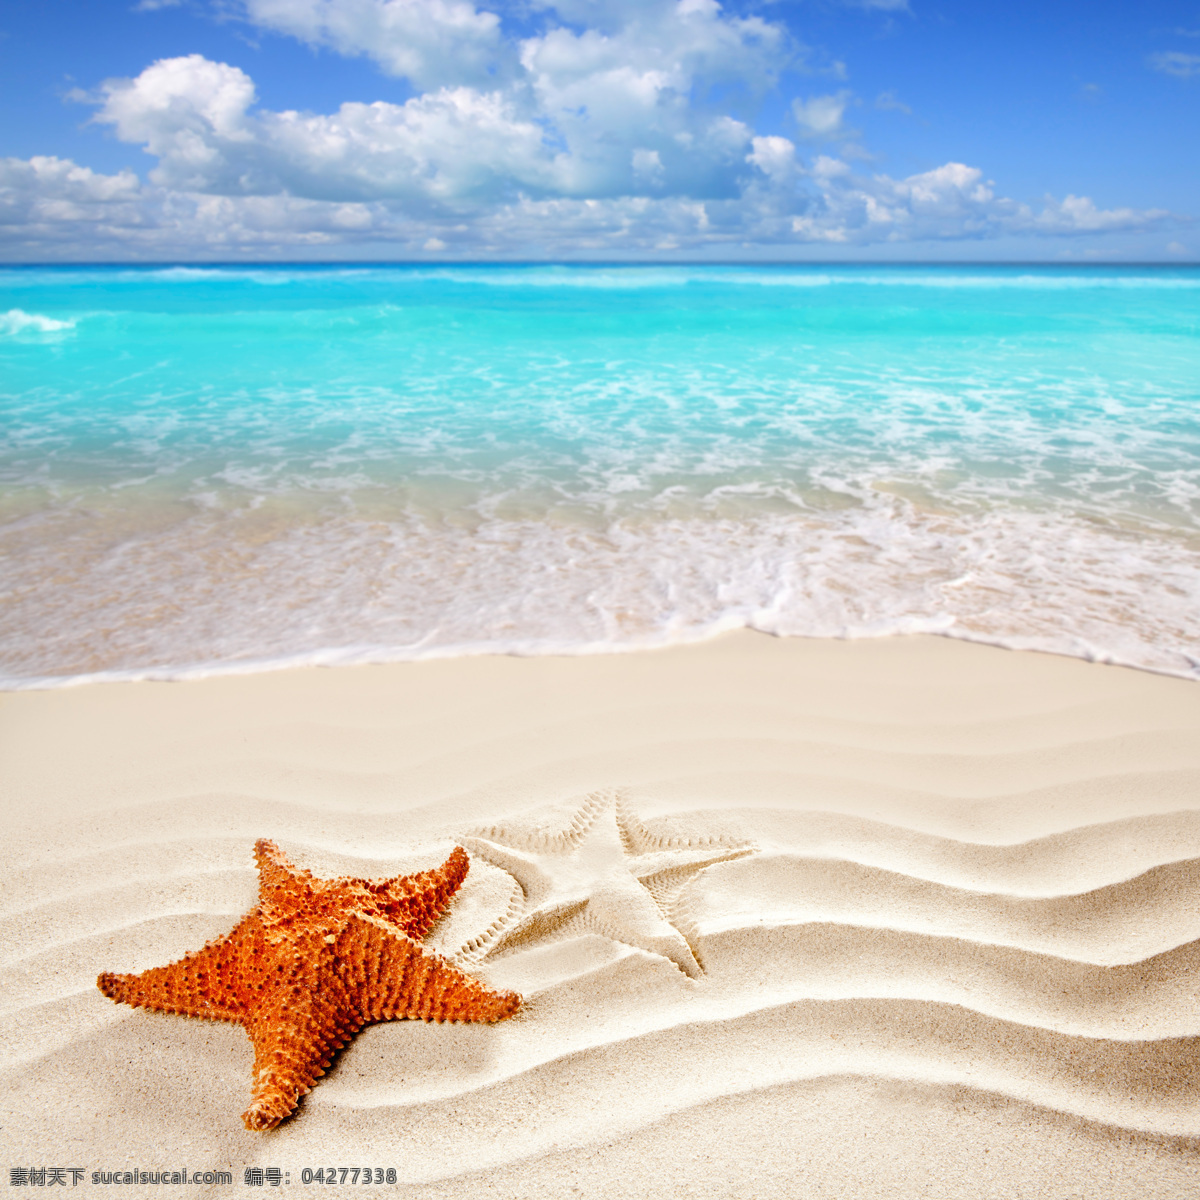 沙滩 上 海星 美丽海滩 沙滩风景 海底生物 水中生物 海洋生物 海洋动物 动物世界 生物世界